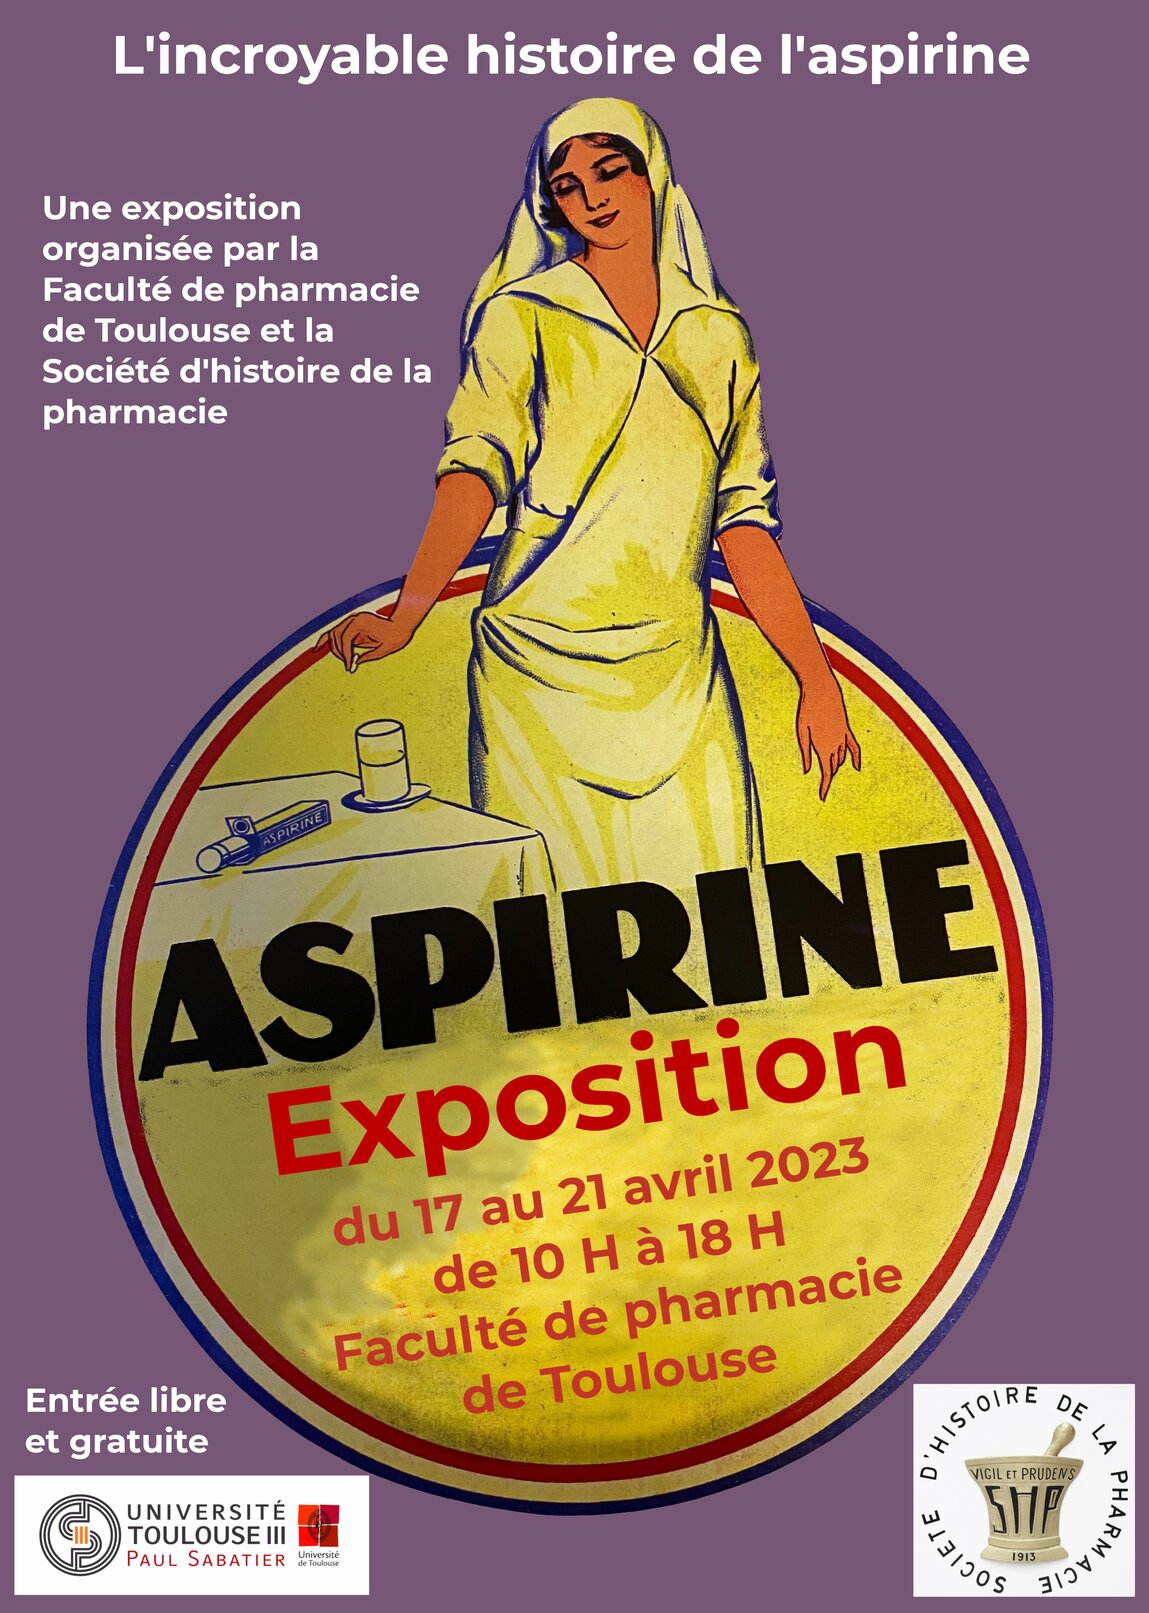 L'incroyable histoire de l'aspirine - Faculté de pharmacie - Expositions - #Toulouse